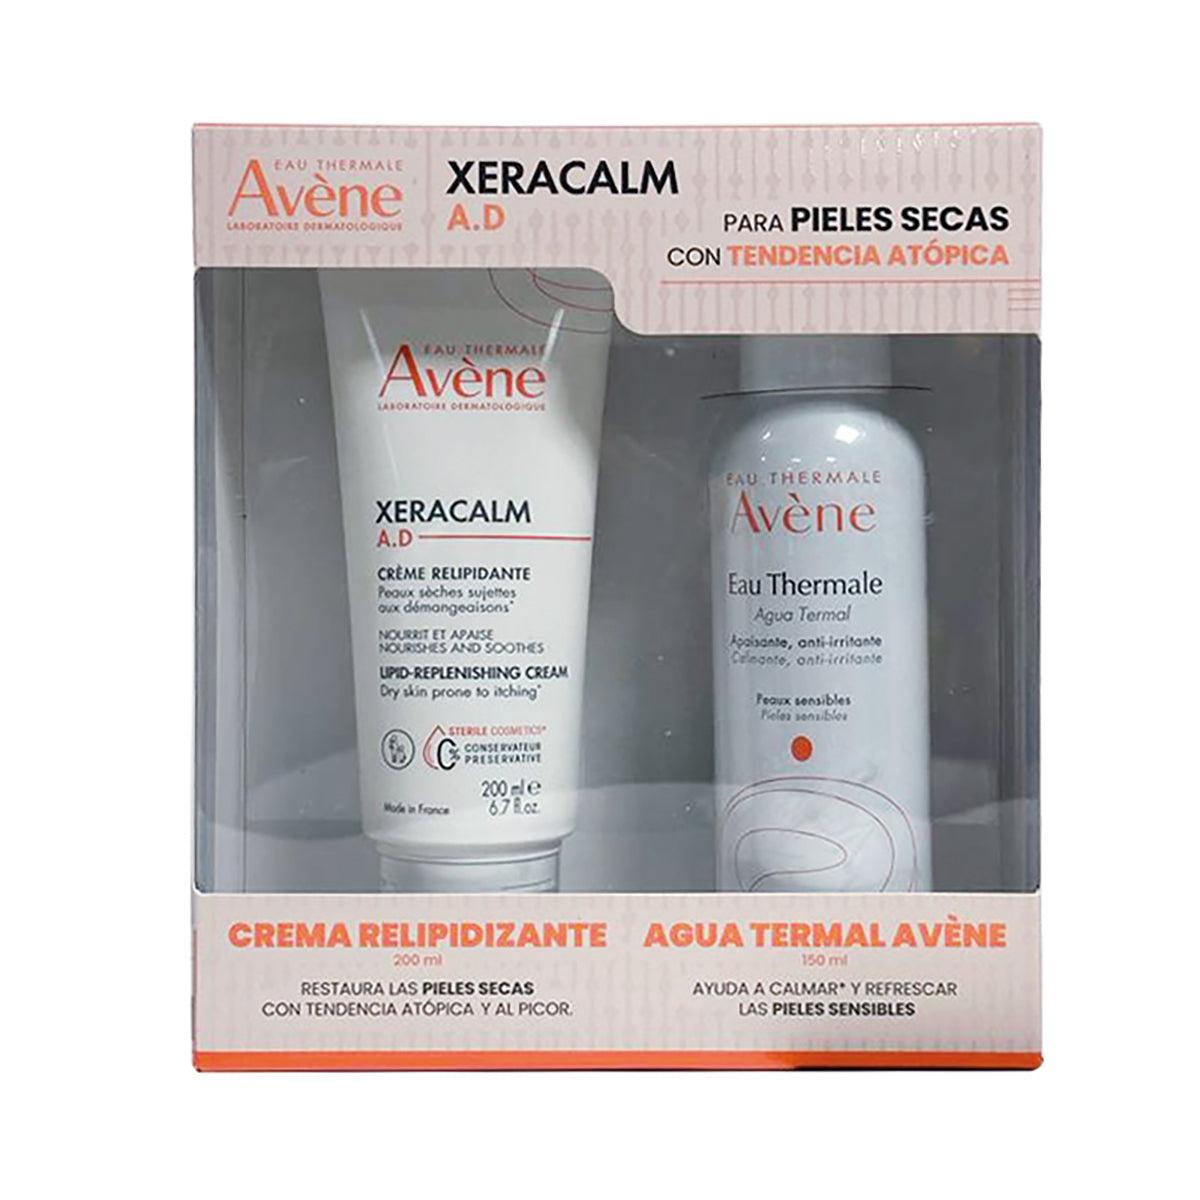 Avene kit Xeracalm a.d crema 200ml + Agua termal 150ml.